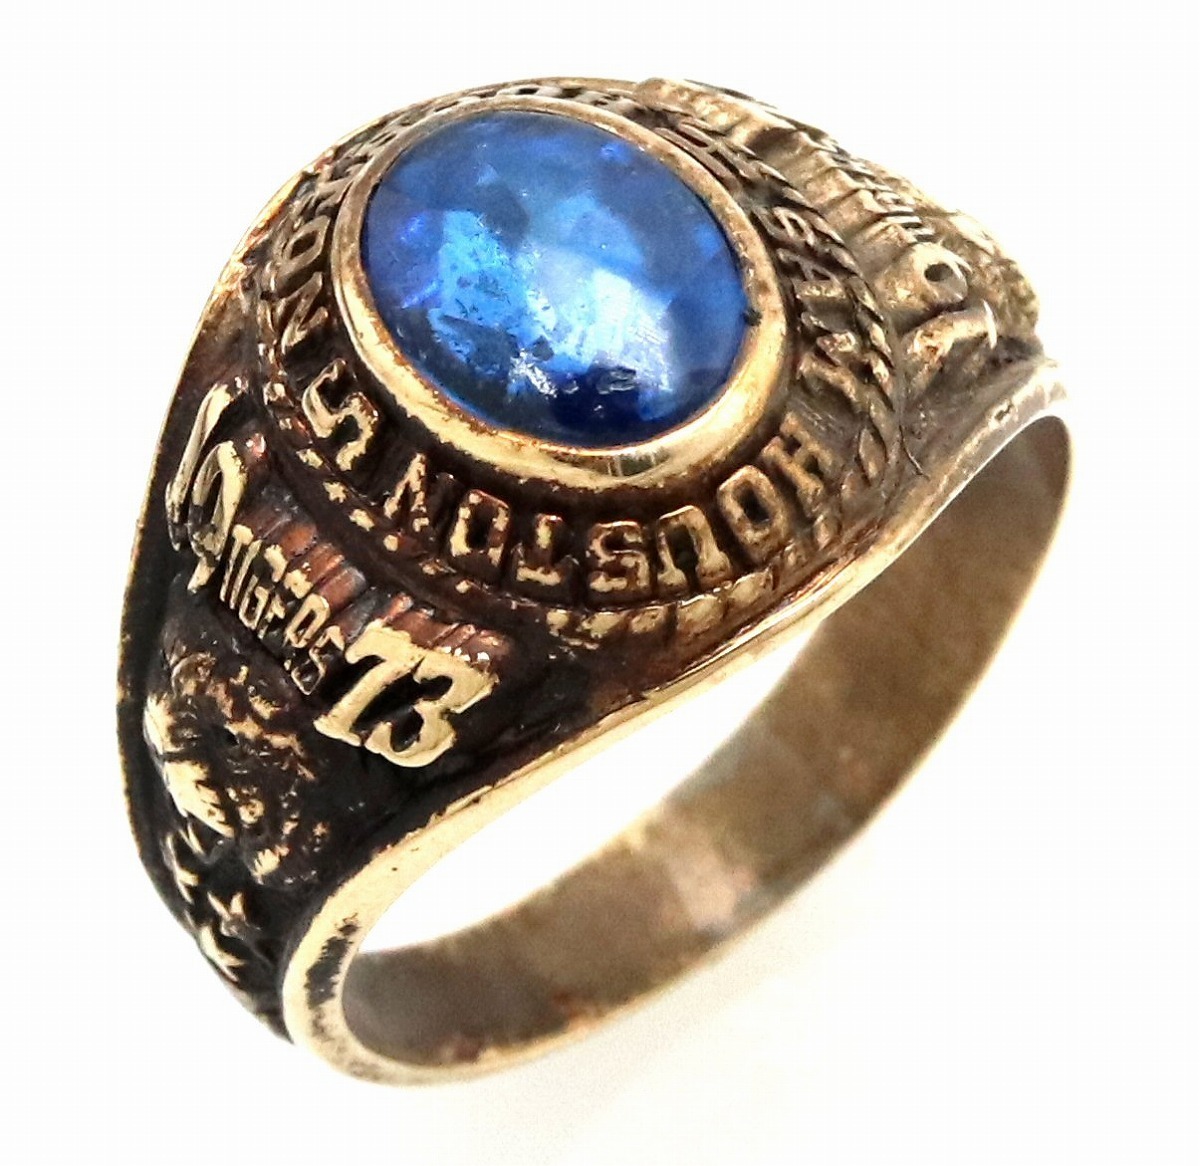 カレッジリング HOUSTON SAM TIGERS 1973 K10YG イエローゴールド 色石 ブルー リング 中古 13号 指輪 予約販売品 青 #13 楽天カード分割